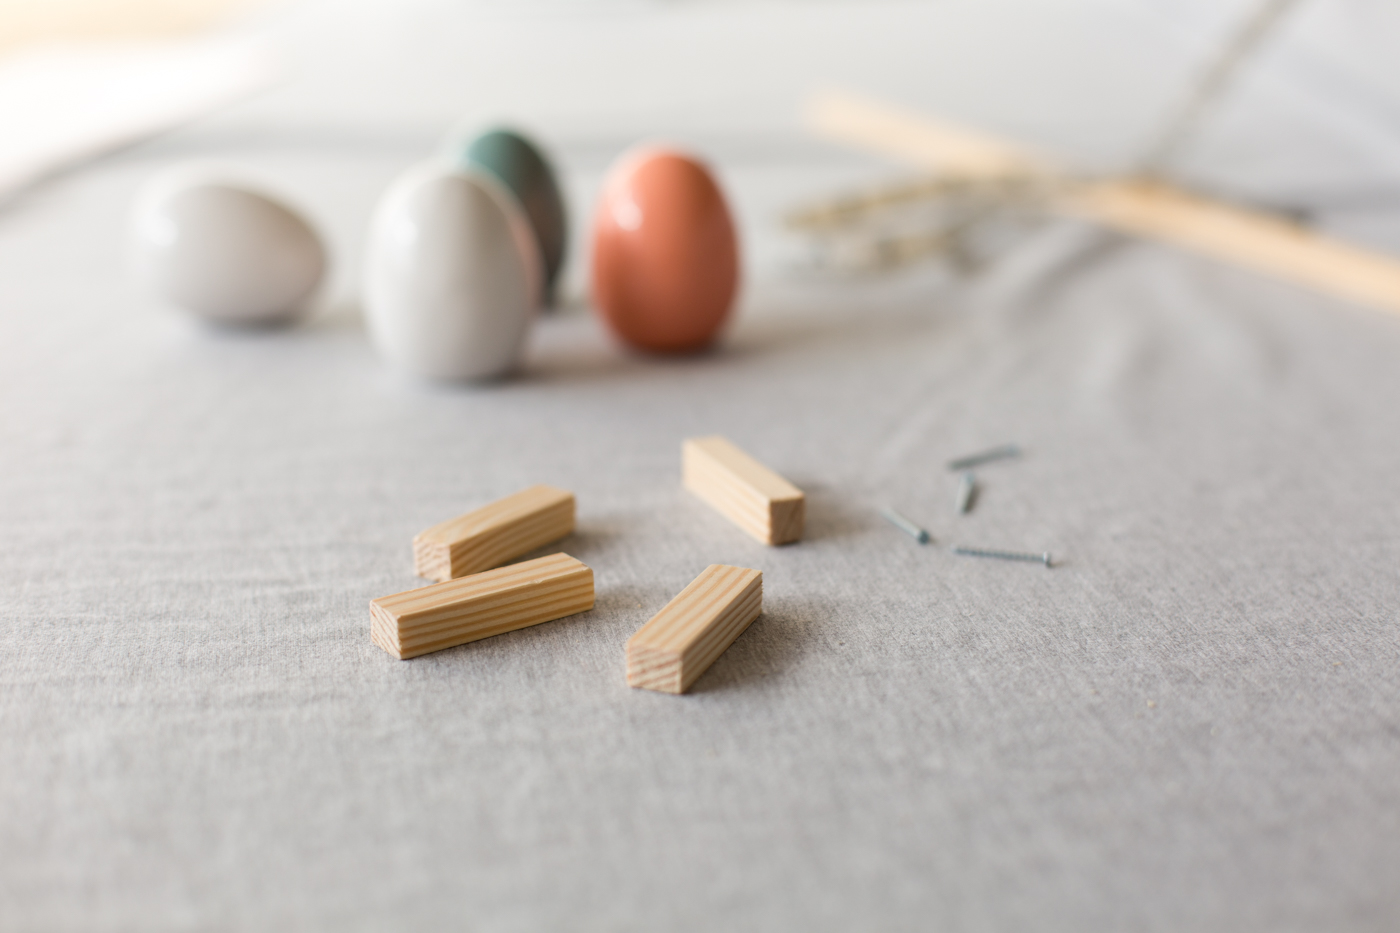 DIY Wooden Easter Egg Cup